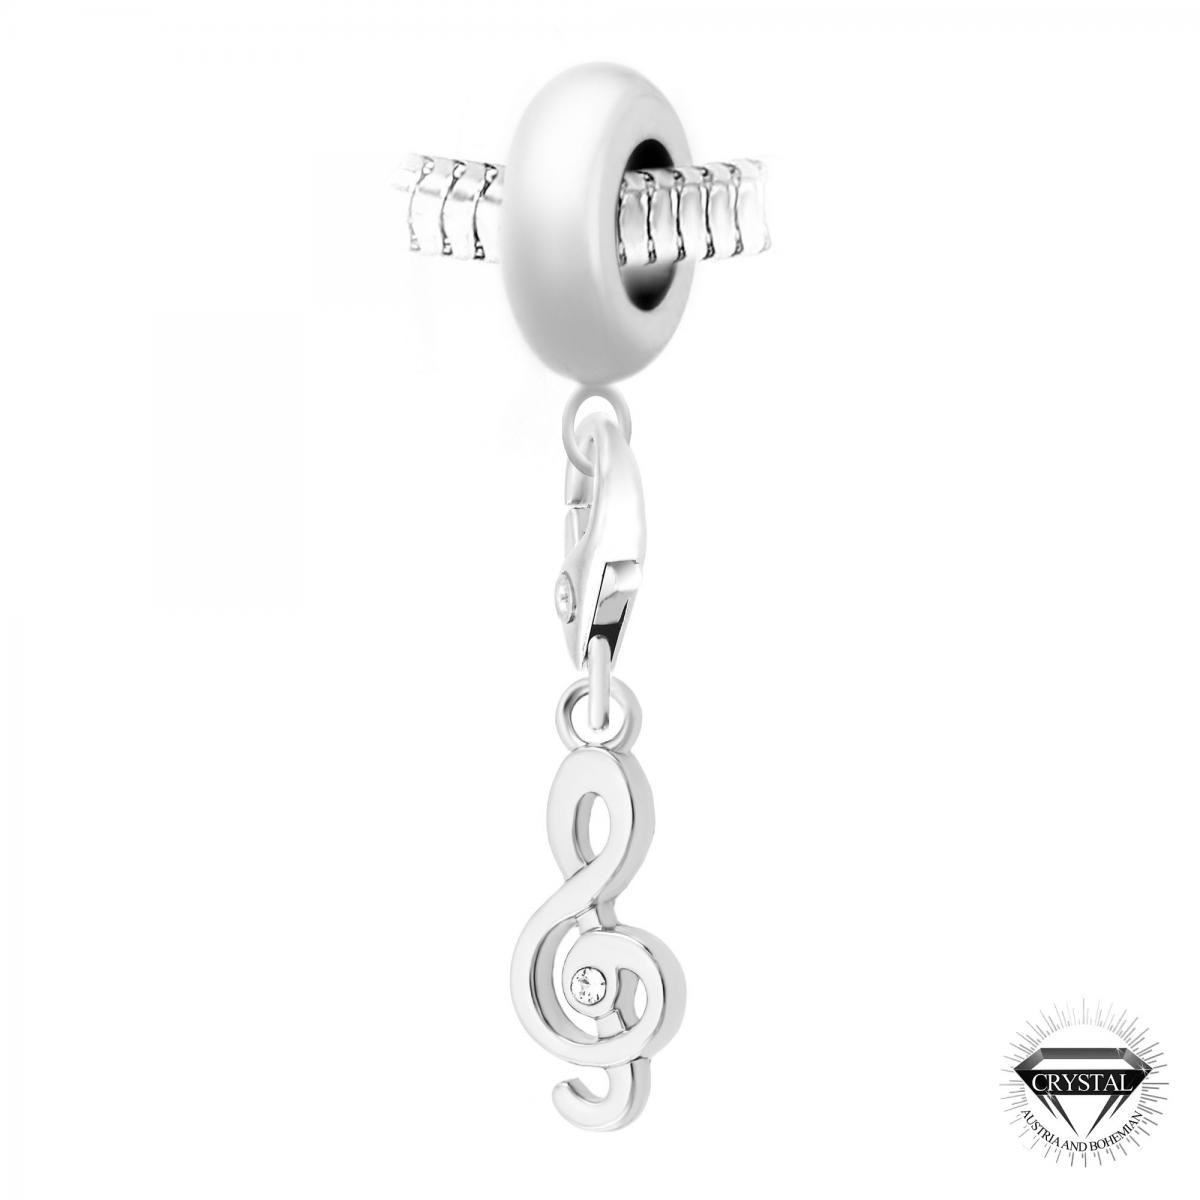 Charm perle clé de Sol orné de cristaux Swarovski par SC Crystal Paris®